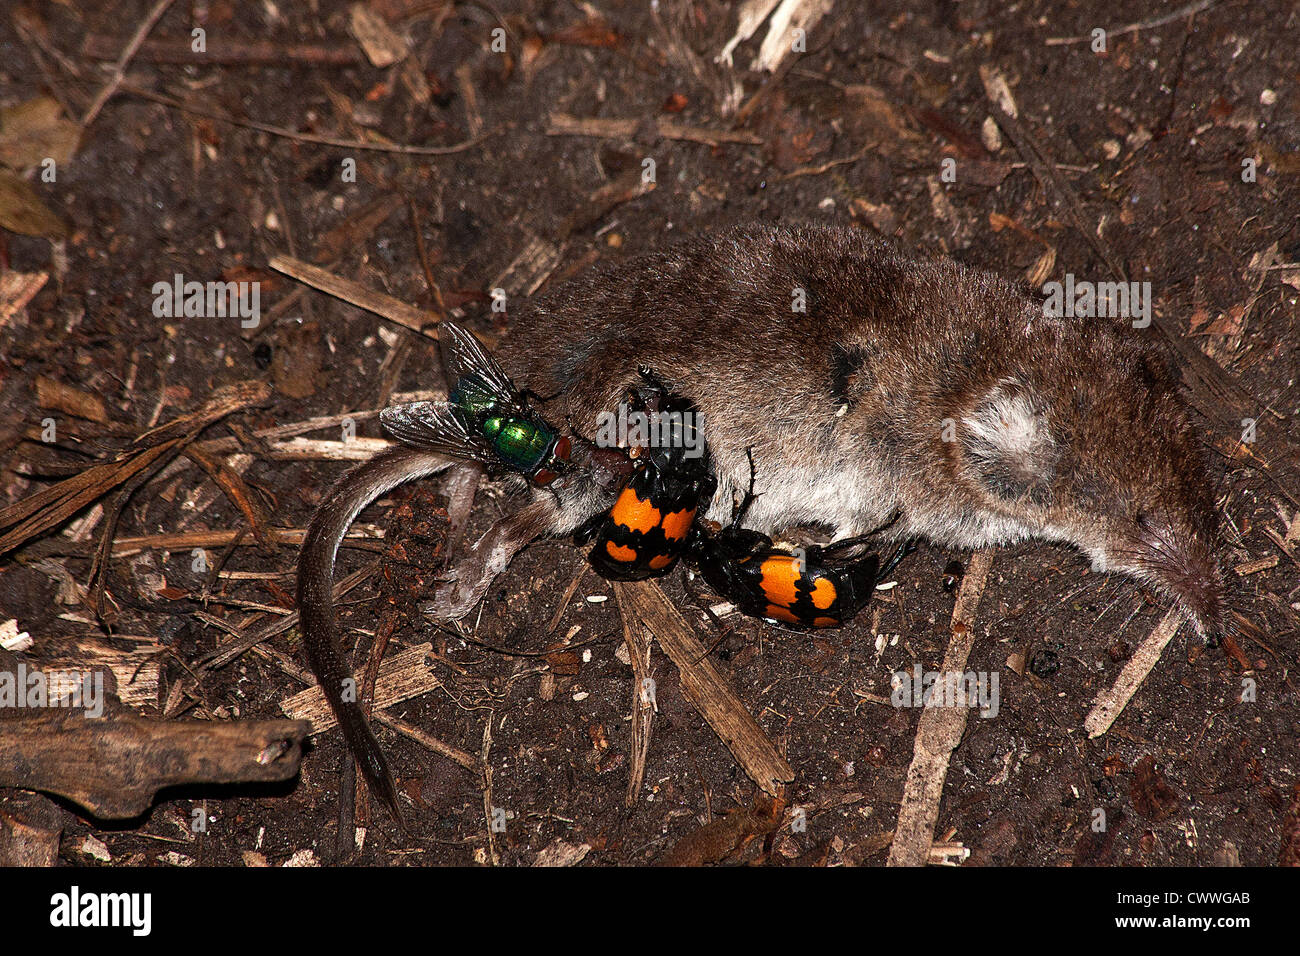 Sexton Käfer und eine grüne Flasche auf eine allgemeine Spitzmaus Stockfoto